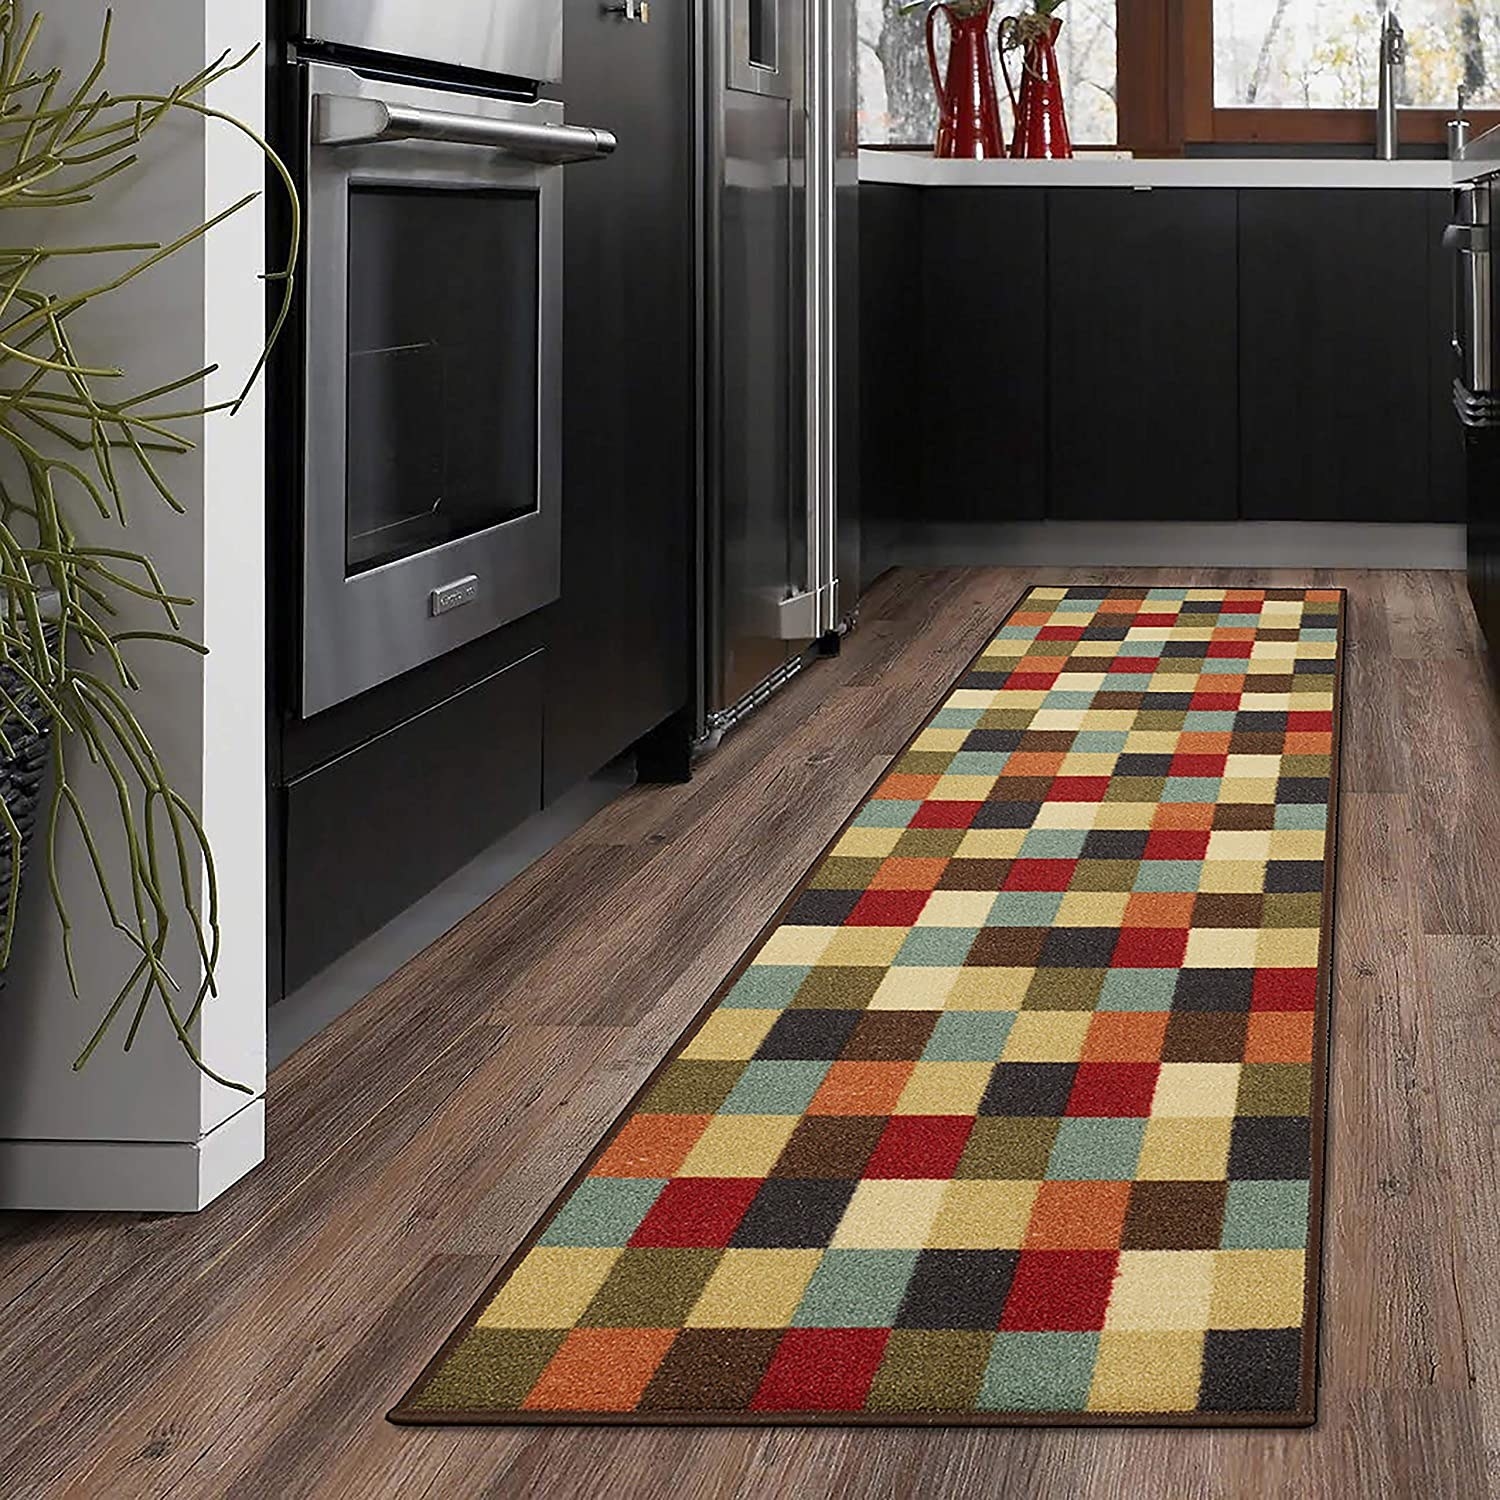 tapete multicolor para la cocina con diseño de cuadros